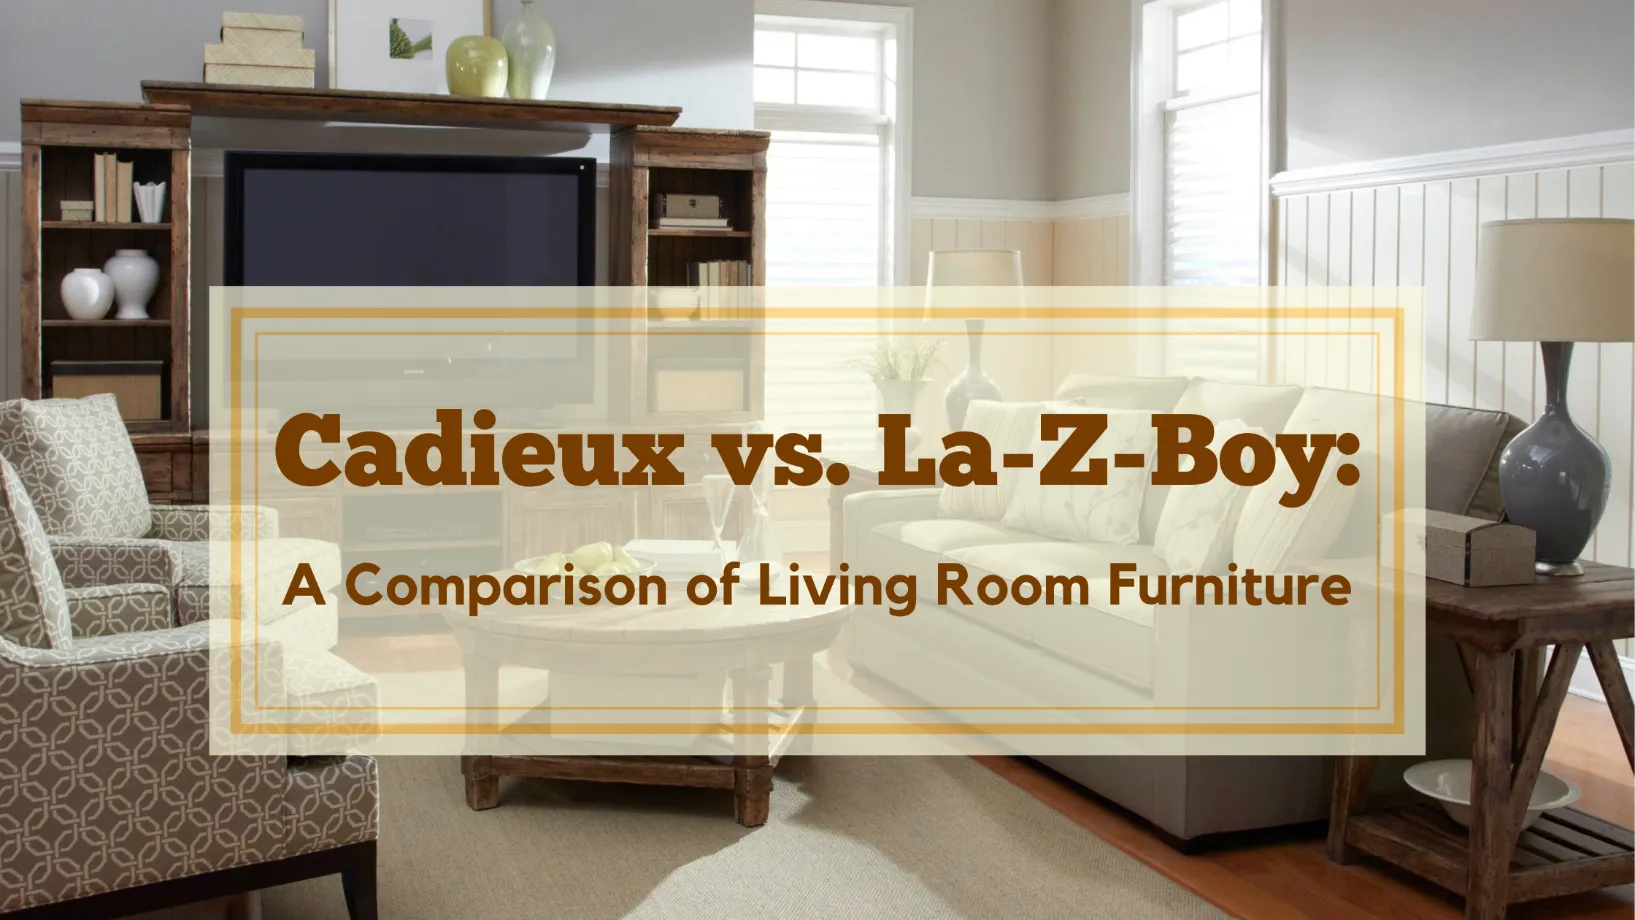 Cadieux vs. La-Z-Boy: A Comparison of Living Room Furniture Retailers